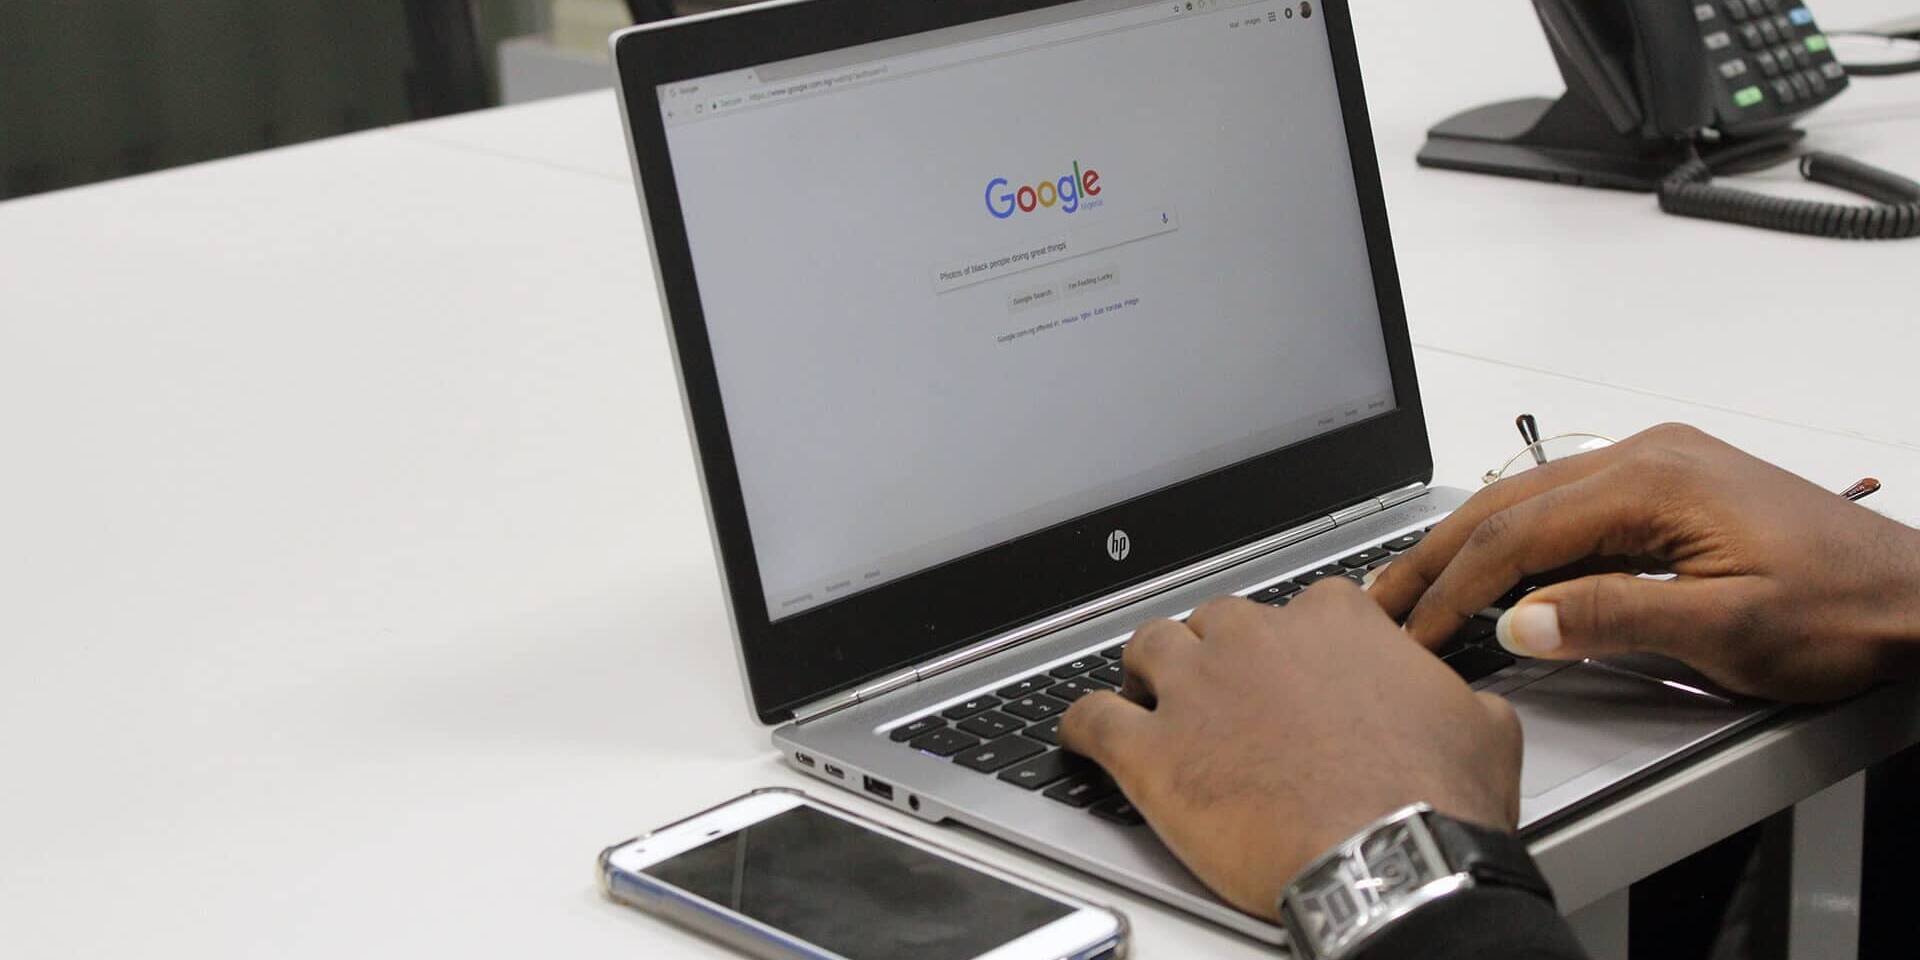 Venda online: Google vai permitir anúncios gratuitos em ferramenta de buscas